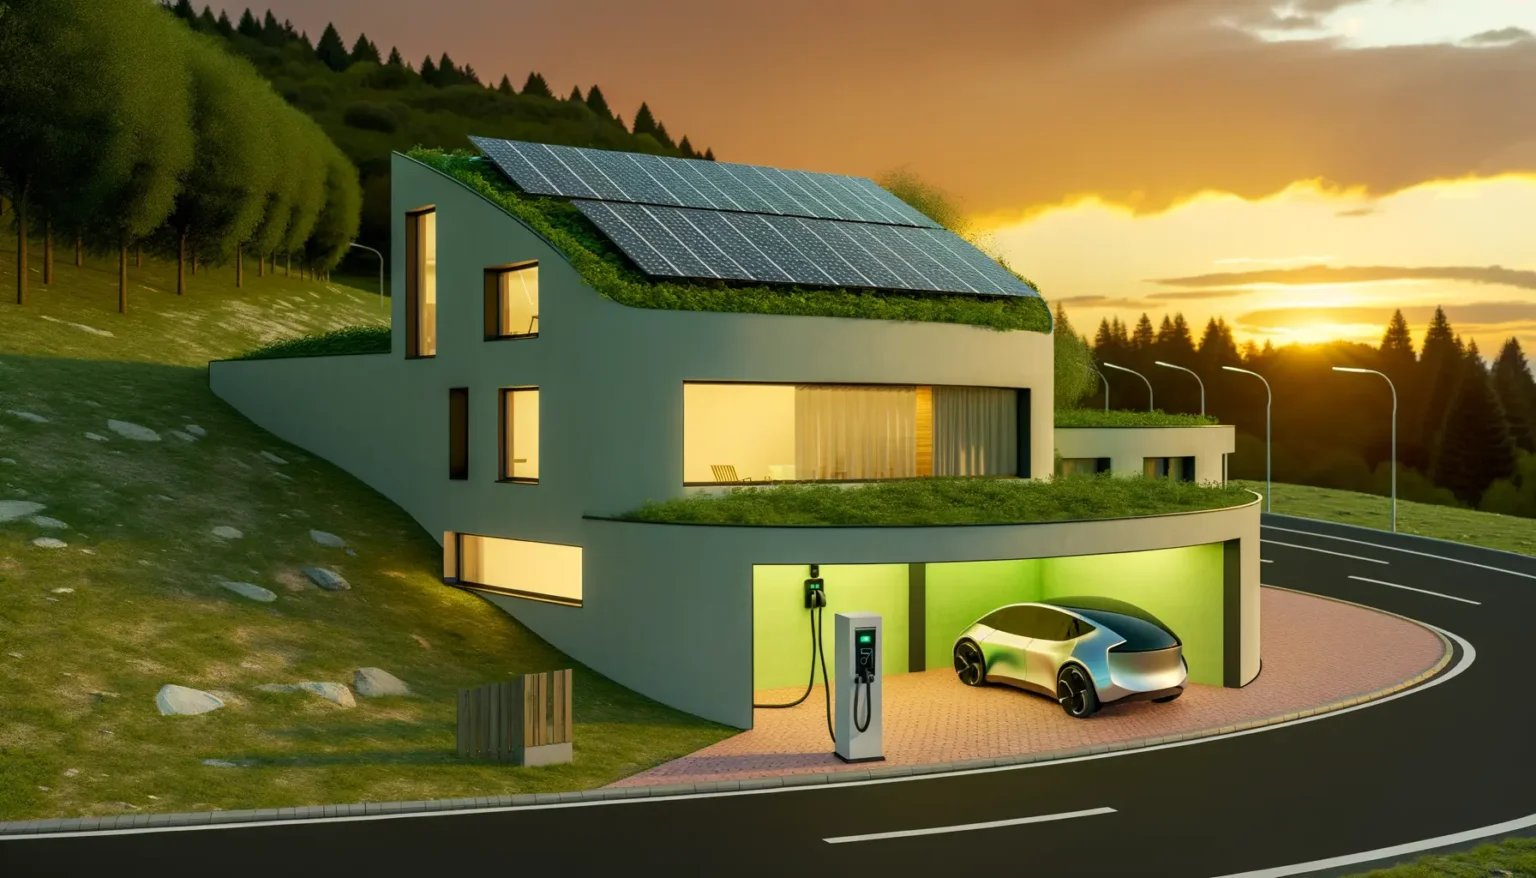 Modernes, umweltfreundliches Haus mit grünen Dächern und Photovoltaikanlage, neben einer Straße bei Sonnenuntergang. Eine Elektroladesäule befindet sich im Vorgarten, und ein silbernes Elektroauto wird gerade aufgeladen.